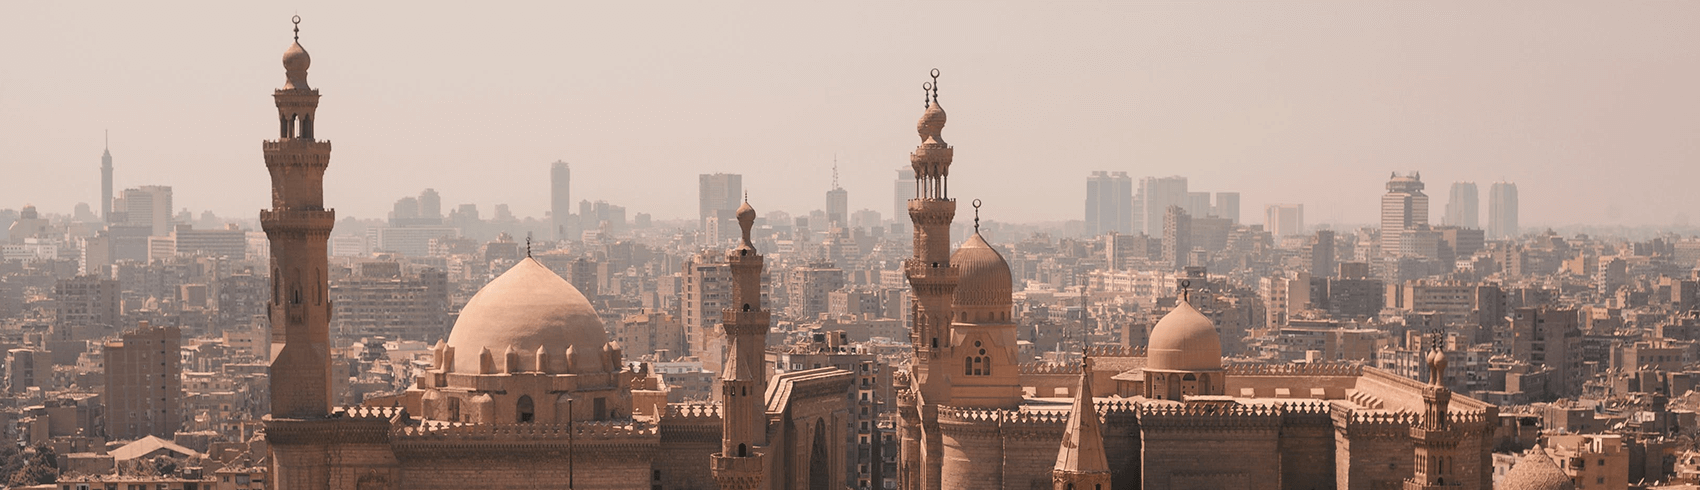 الأنشطة السياحية في القاهرة